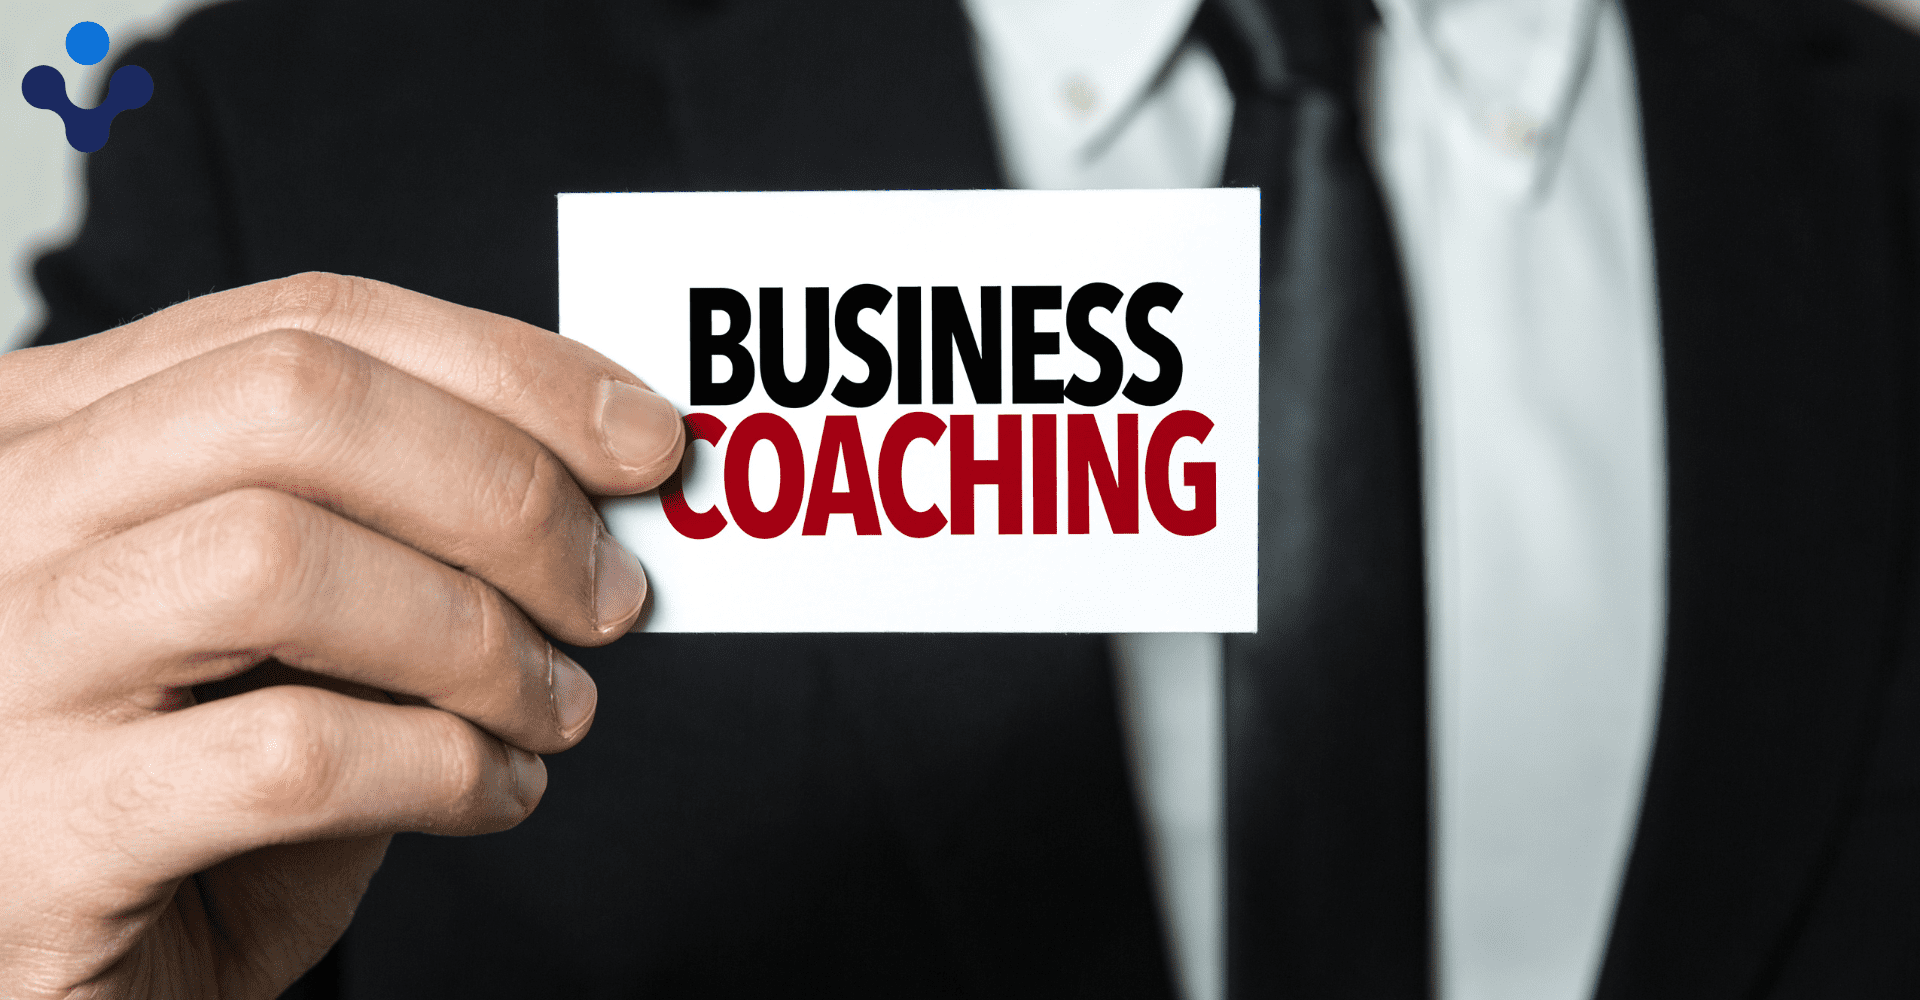 Business coaching 